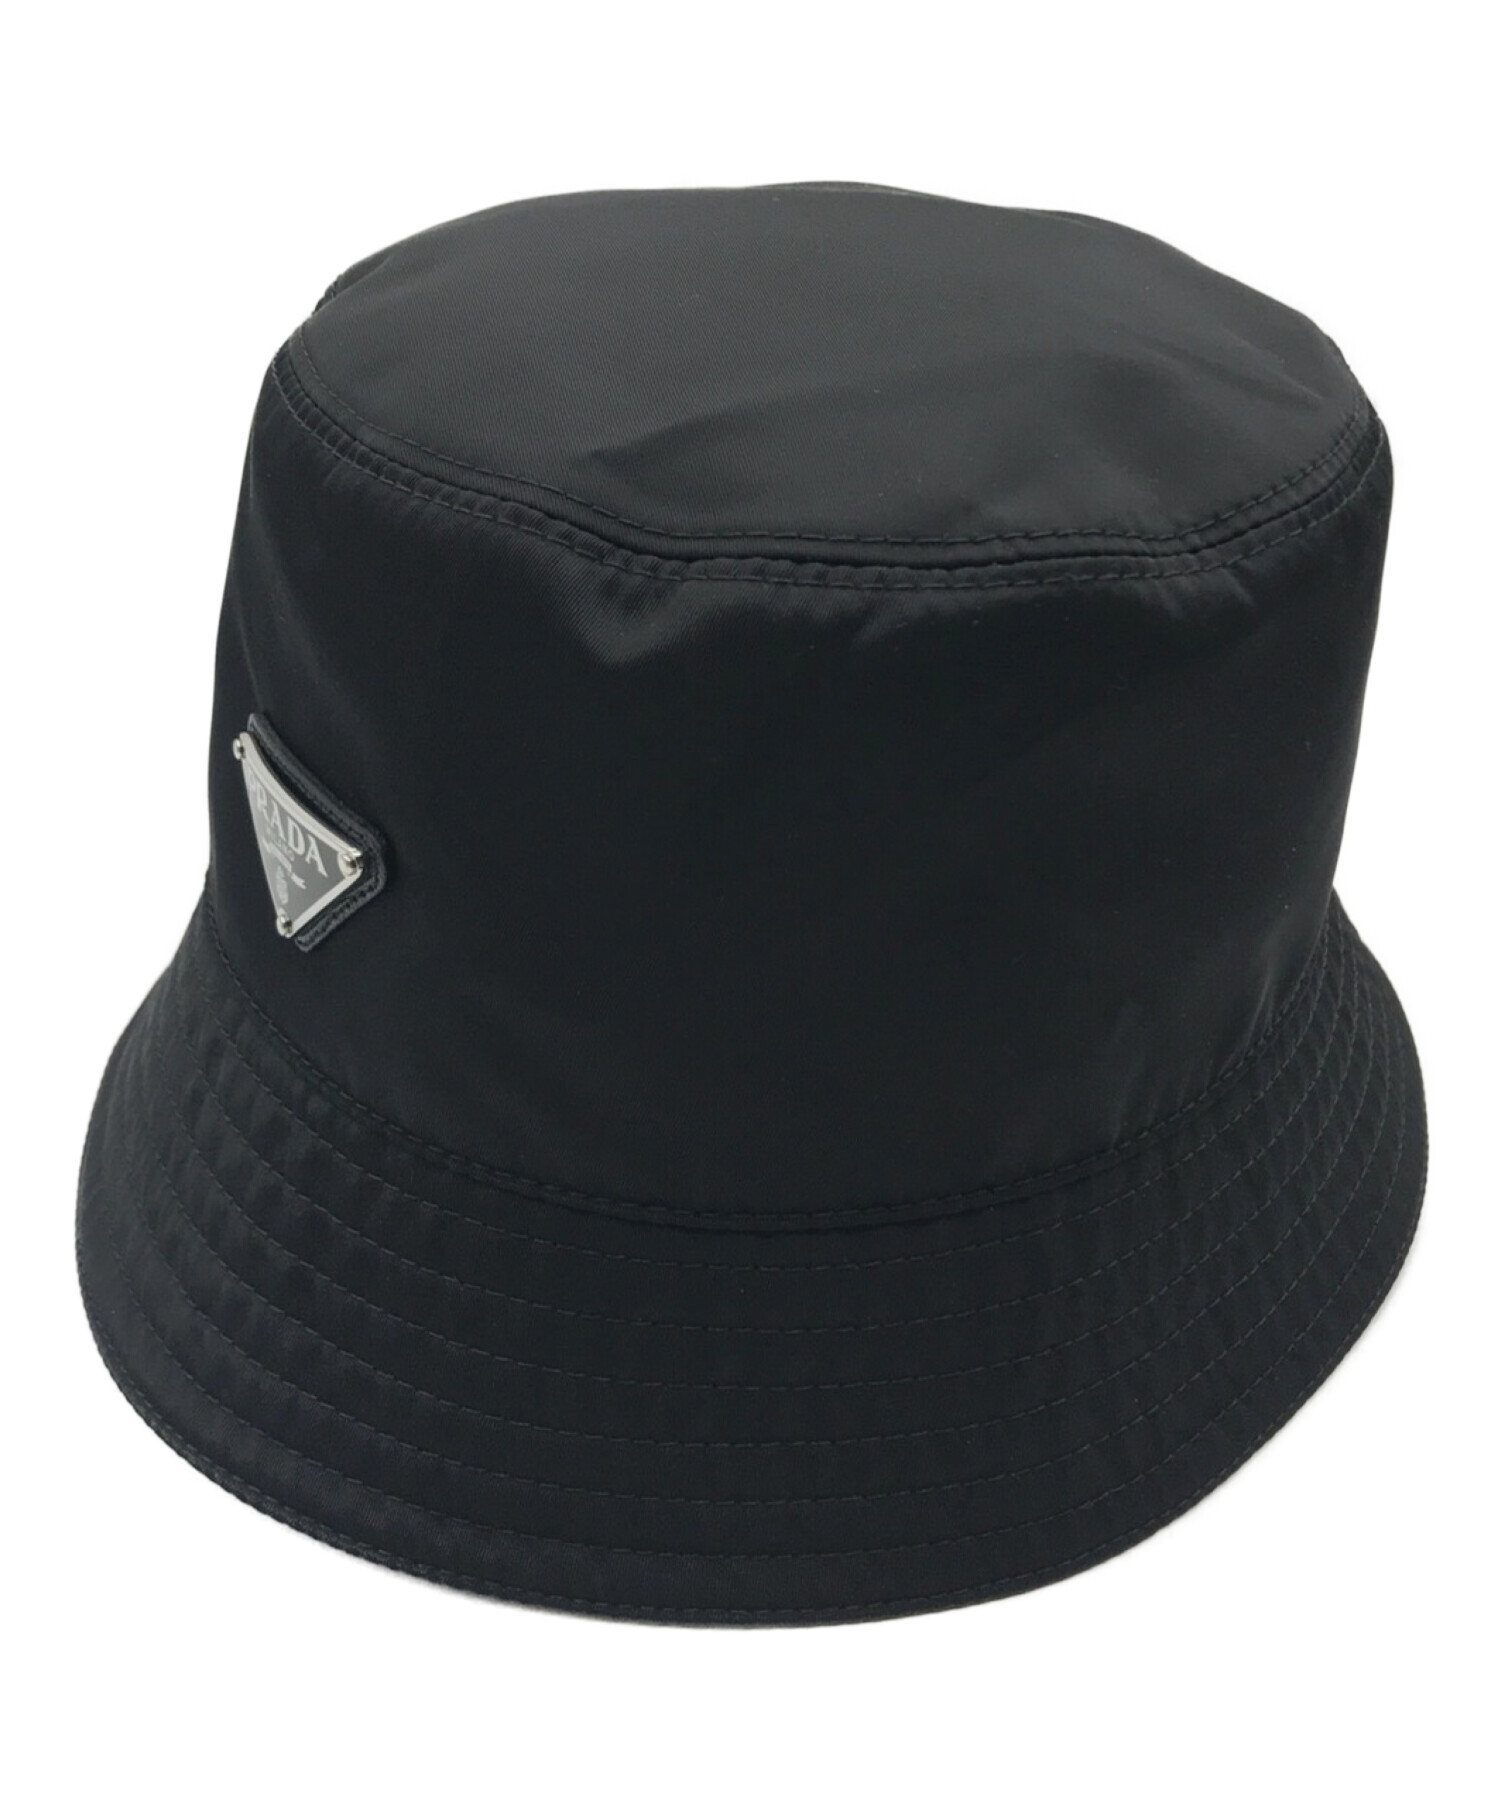 三角プレートがかわいい商品ですPRADA Re-Nylon Bucket Hat  Lサイズ